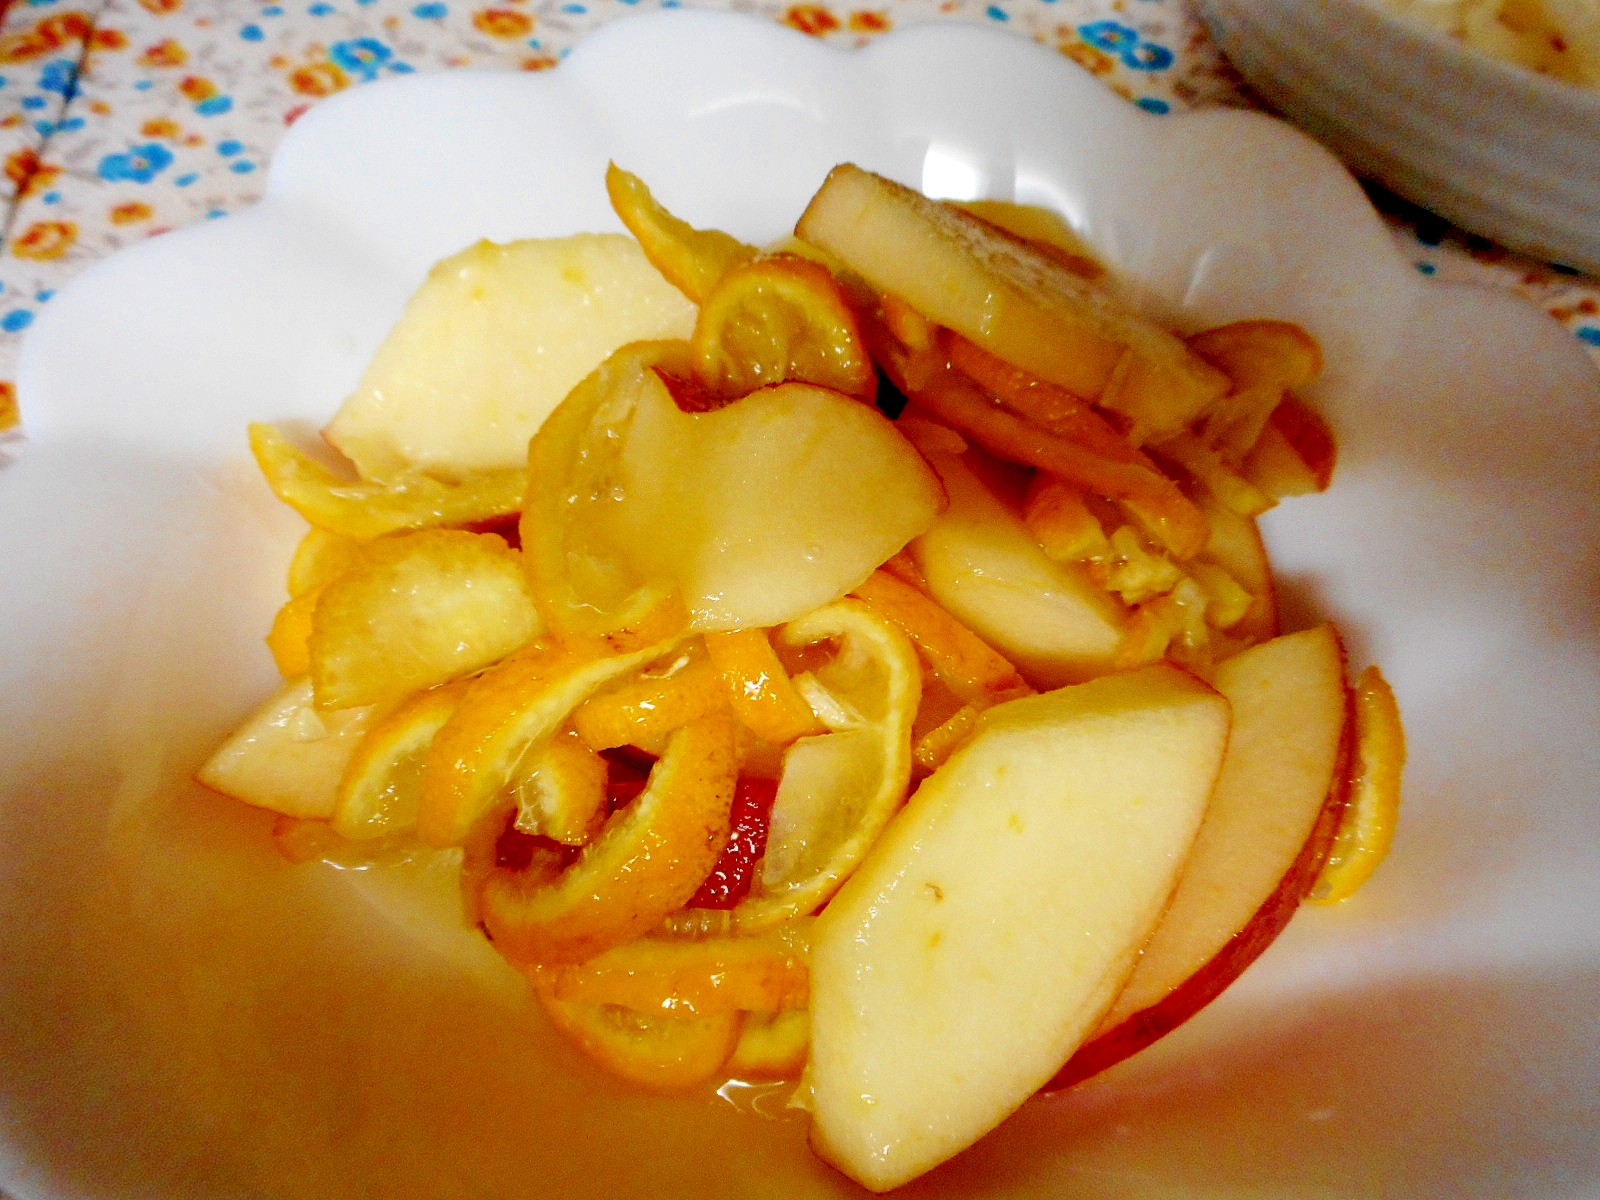 リンゴとゆずの砂糖漬け お手軽レシピで作る Jaグループ